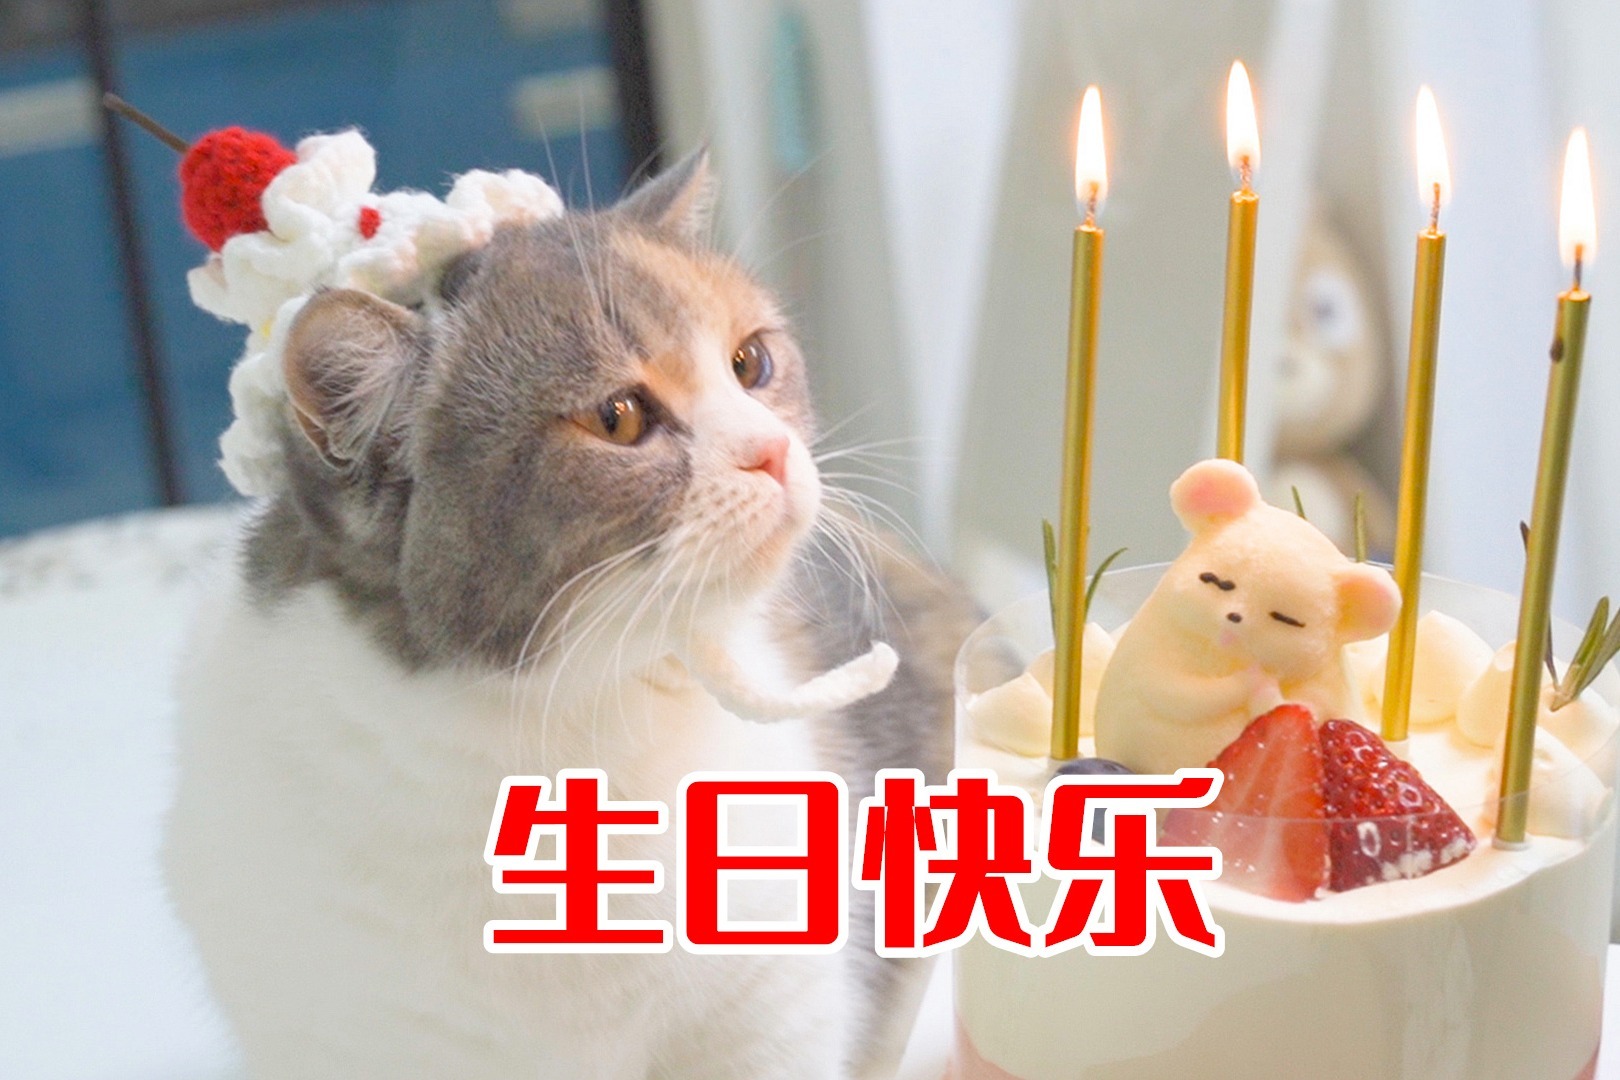 生日蛋糕猫咪图案,猫咪生日蛋糕 - 伤感说说吧